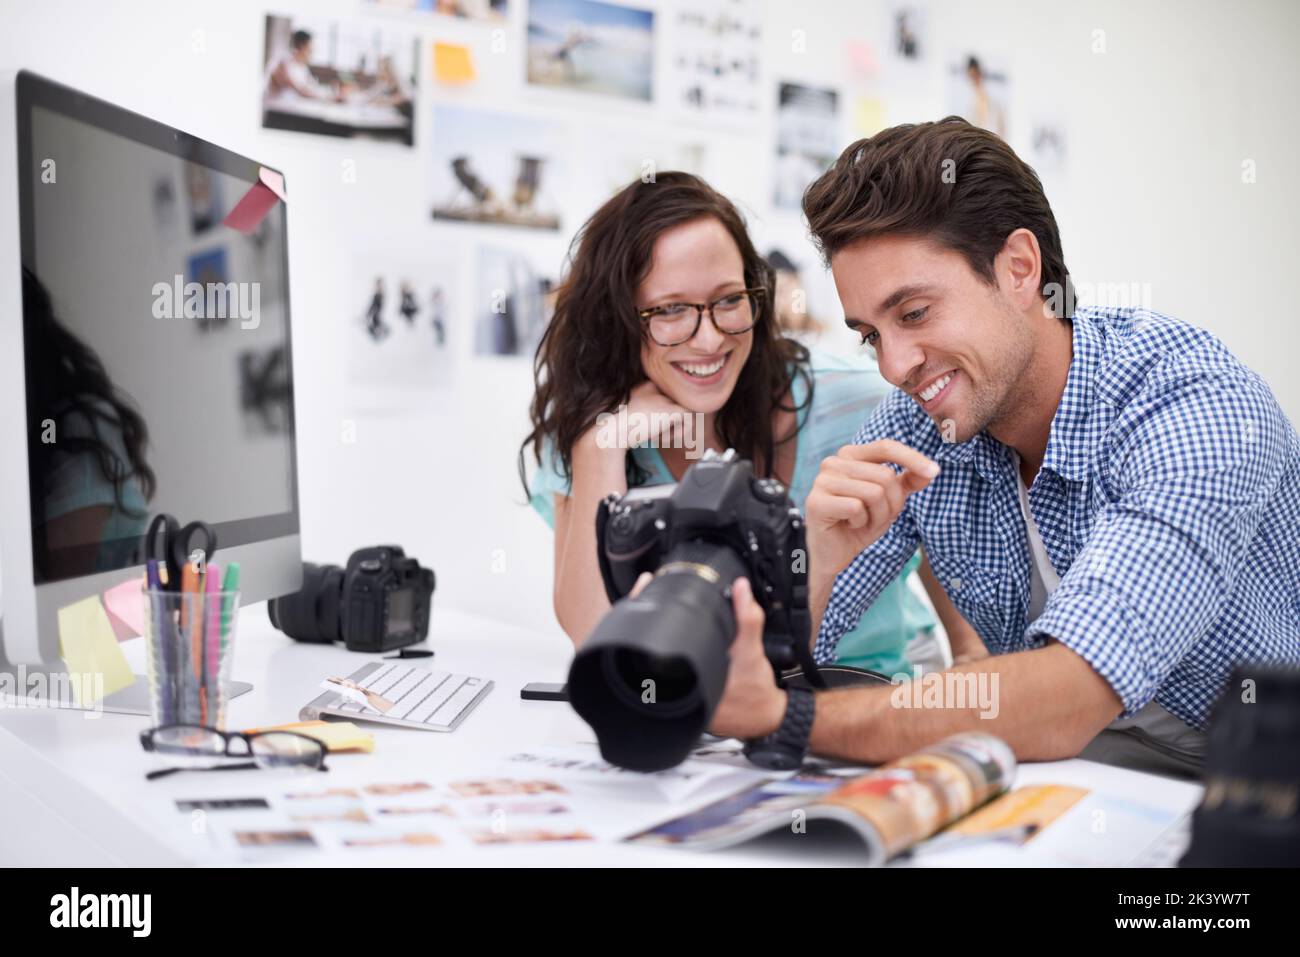 Choisir l'image parfaite... deux jeunes photographes regardant des photos sur un appareil photo numérique dans leur studio. Banque D'Images